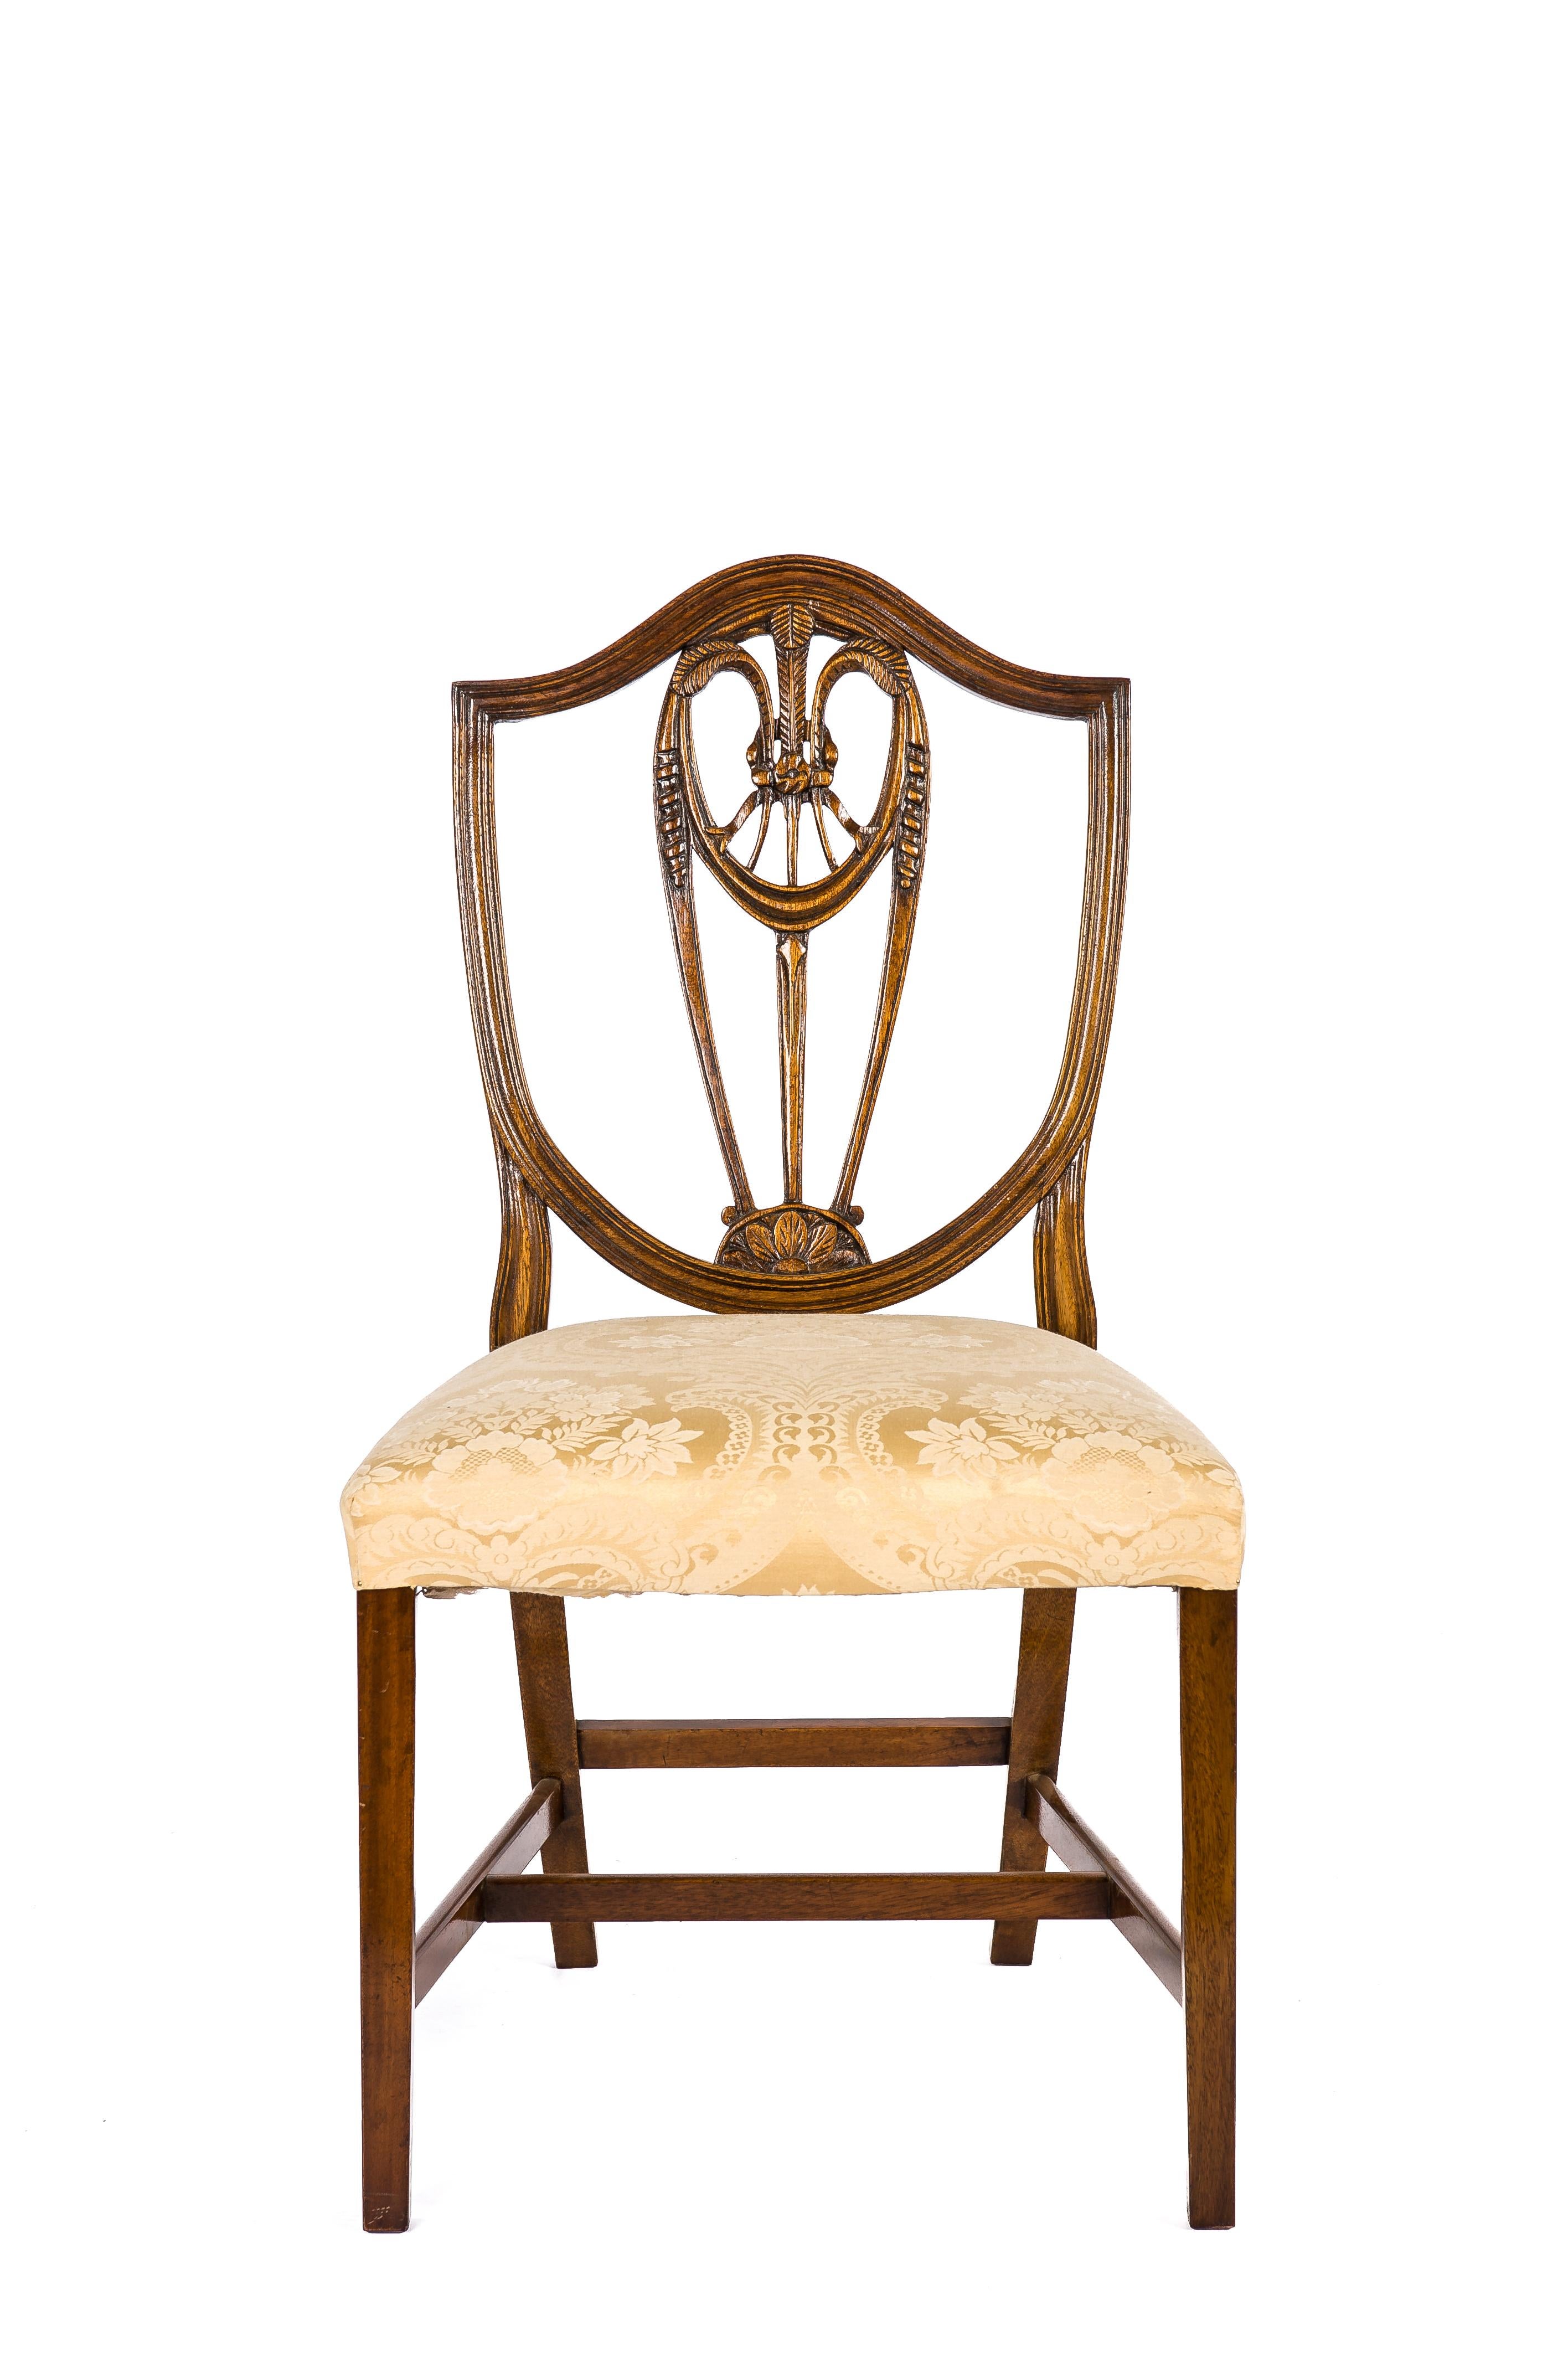 Schönes Paar von George III handgeschnitzten Mahagoni-Esszimmerstühlen in der Art von George Hepplewhite.
Beide Stühle haben eine schildförmige Lyra-Rückenlehne mit Weizenähren-Dekor, quadratische, spitz zulaufende Beine und Querstreben. Die